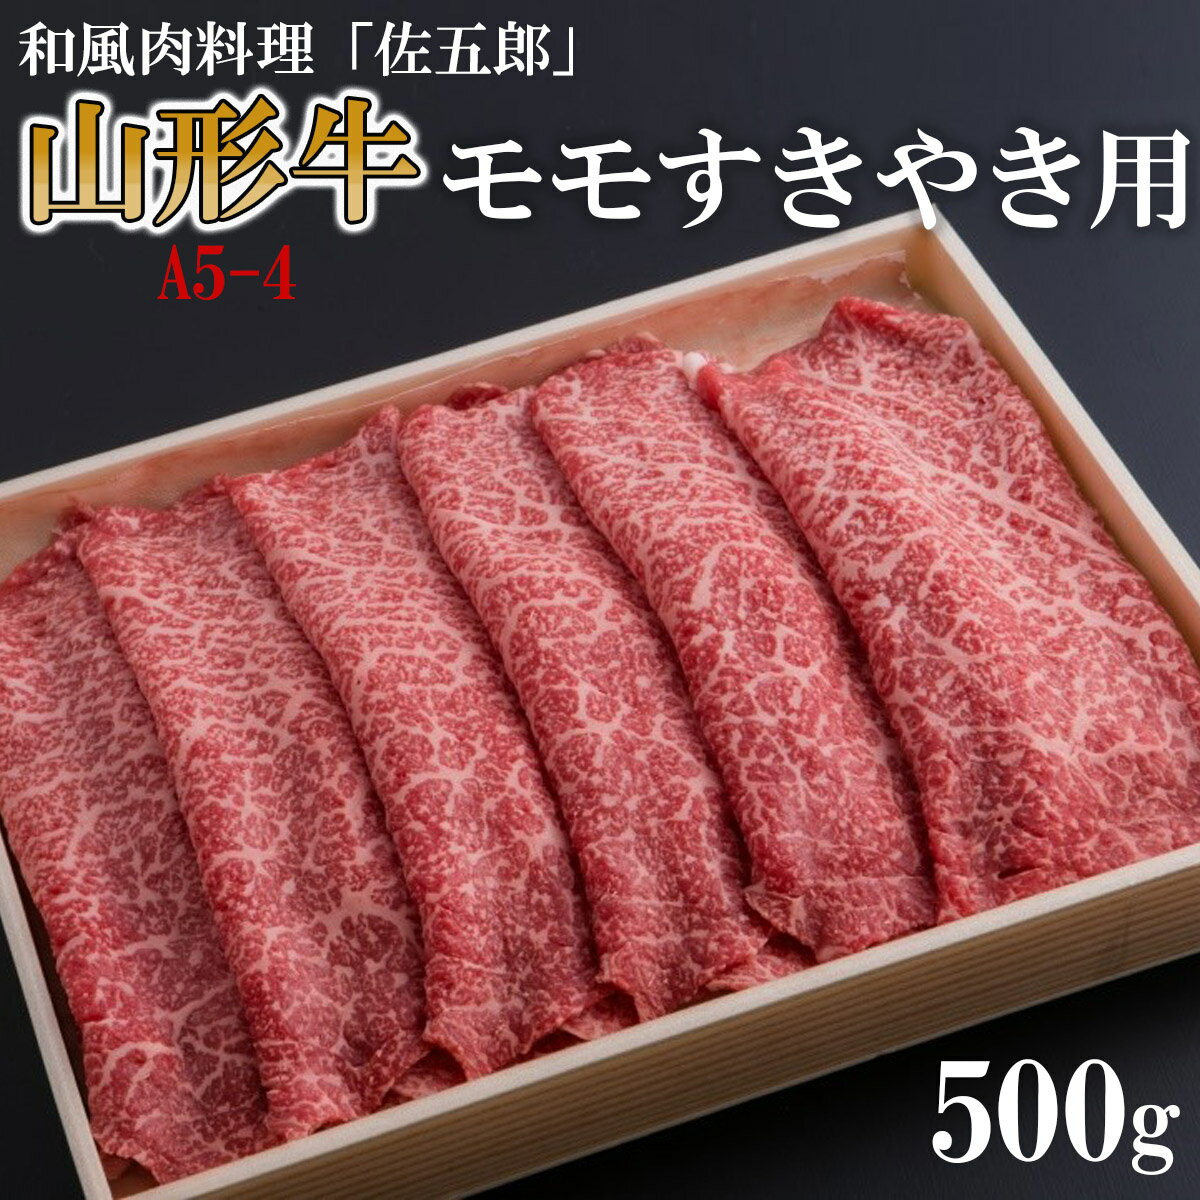 【ふるさと納税】和風肉料理「佐五郎」山形牛A5-4 モモすき